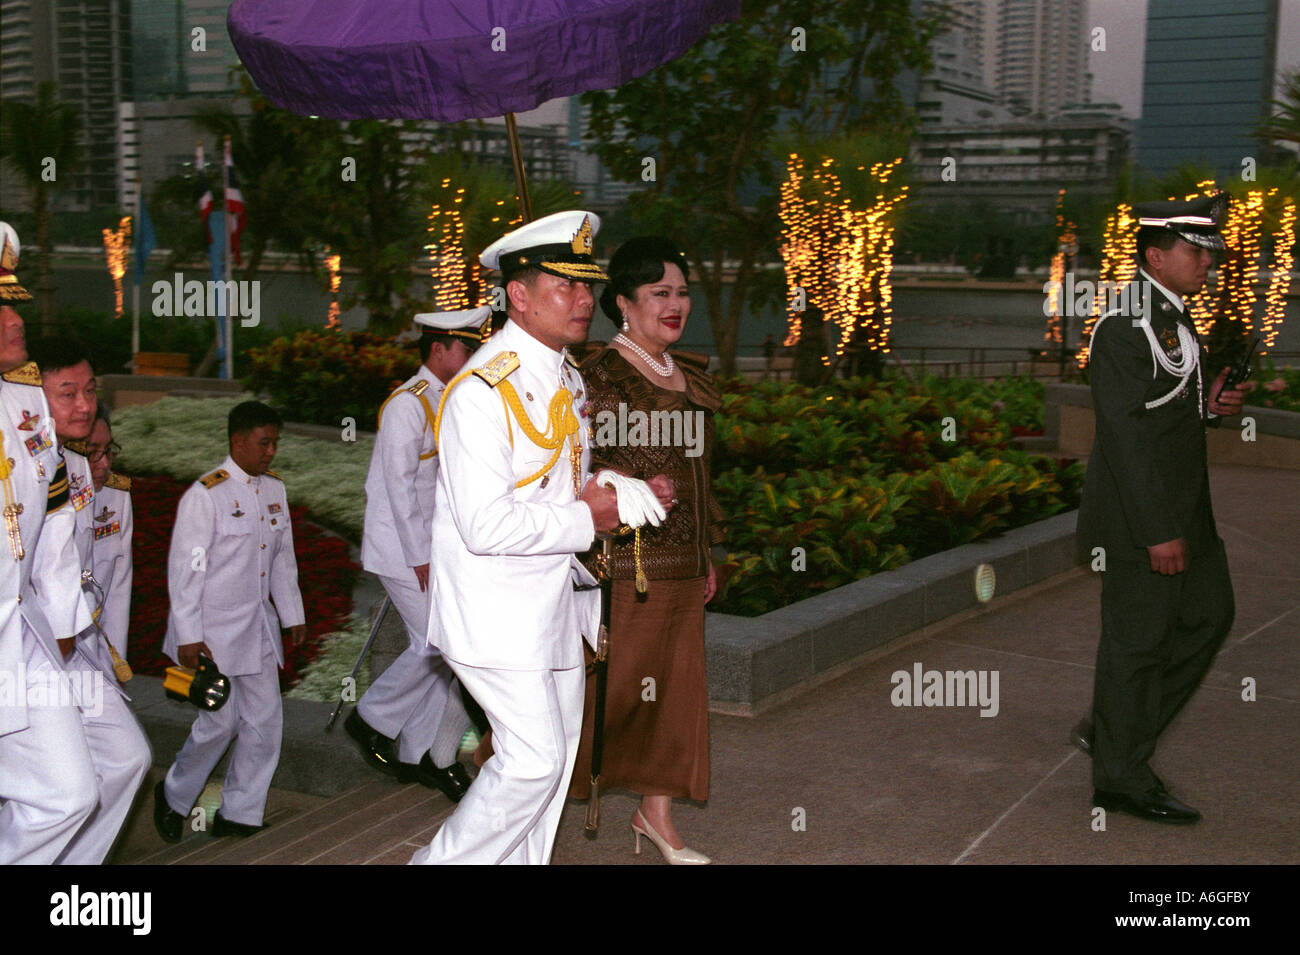 Thaïlande, Bangkok La Reine Sirikit, épouse de Bhumibol Adulyadej (Rama IX), Roi de Thaïlande, au cours de l'ouverture parc Benjakiti. Banque D'Images